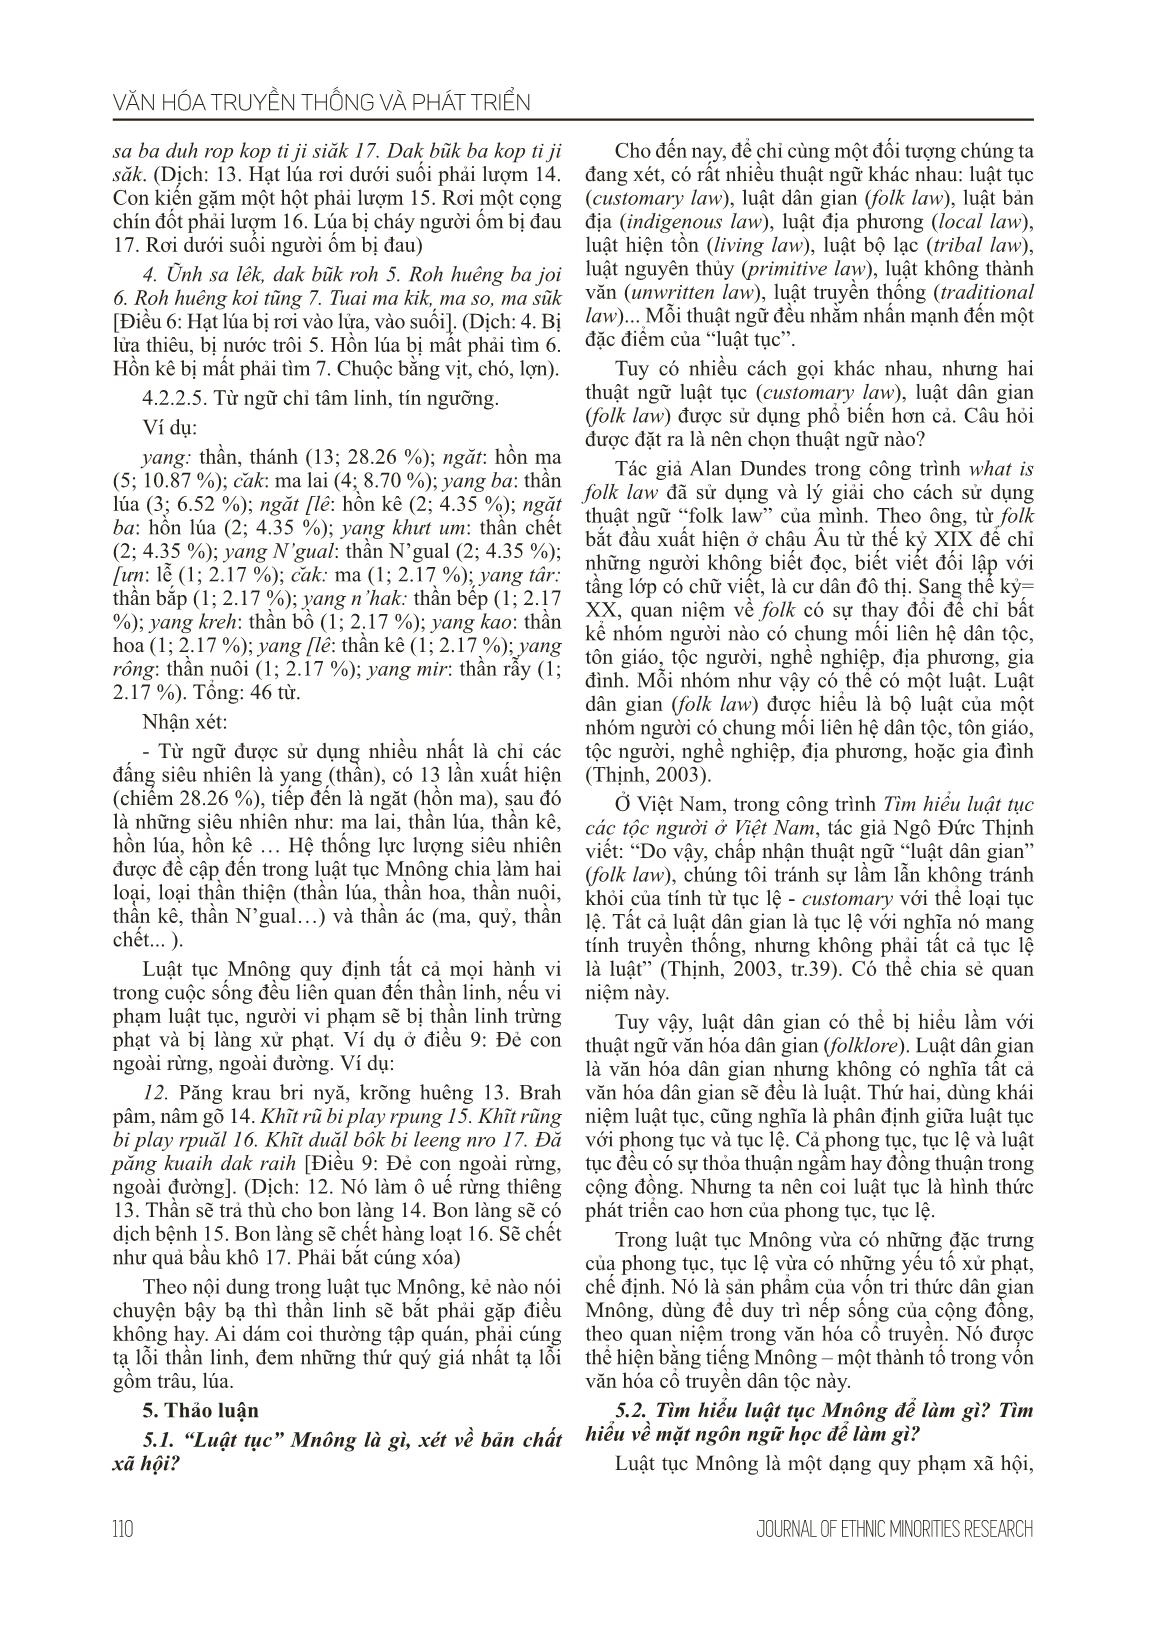 Đặc điểm ngôn ngữ trong luật tục Mnông (Nghiên cứu trường hợp: chương IV - Về phong tục tập quán) trang 7